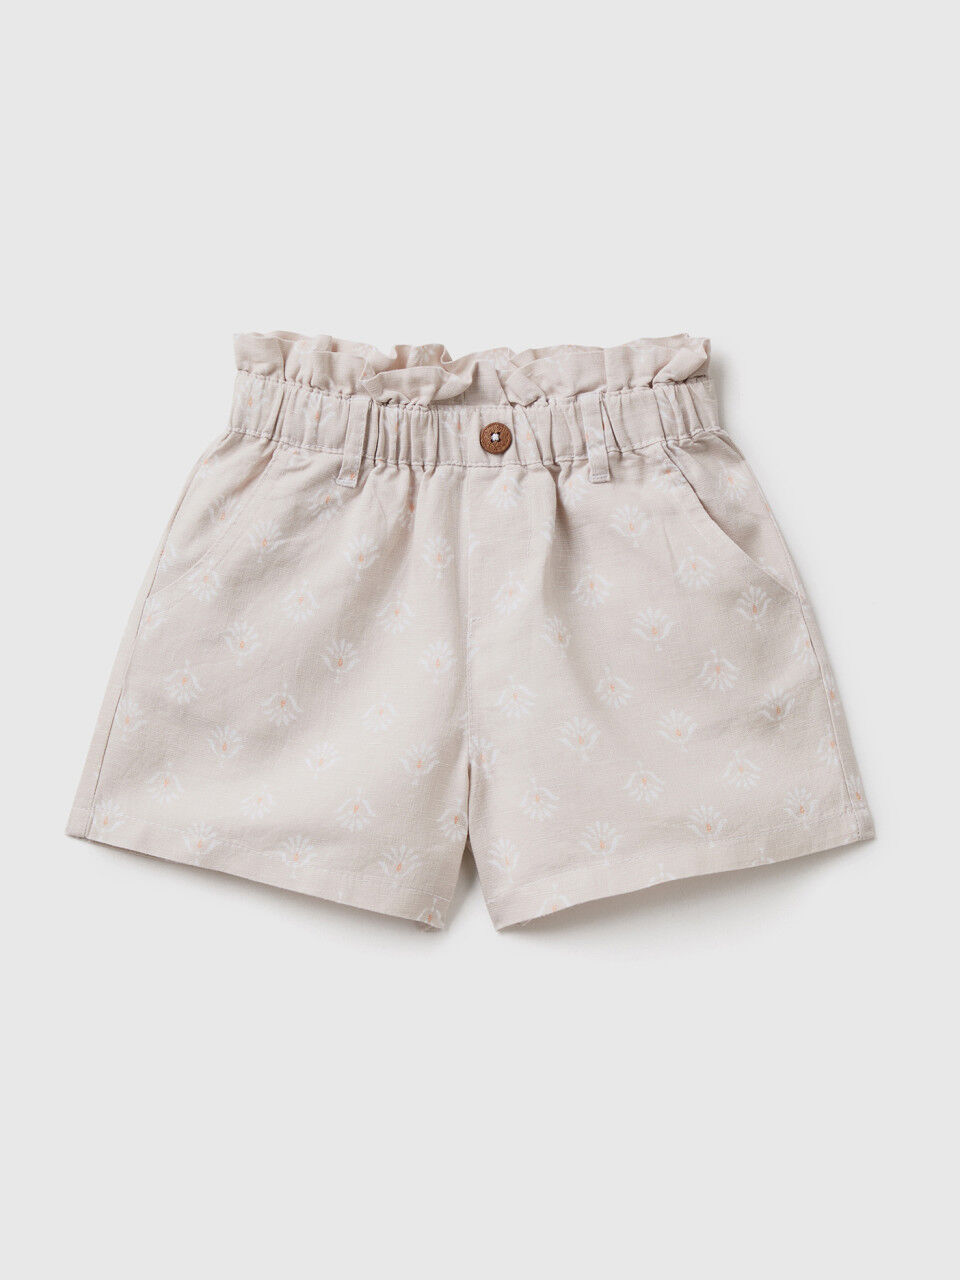 Paperbag shorts in linen blend